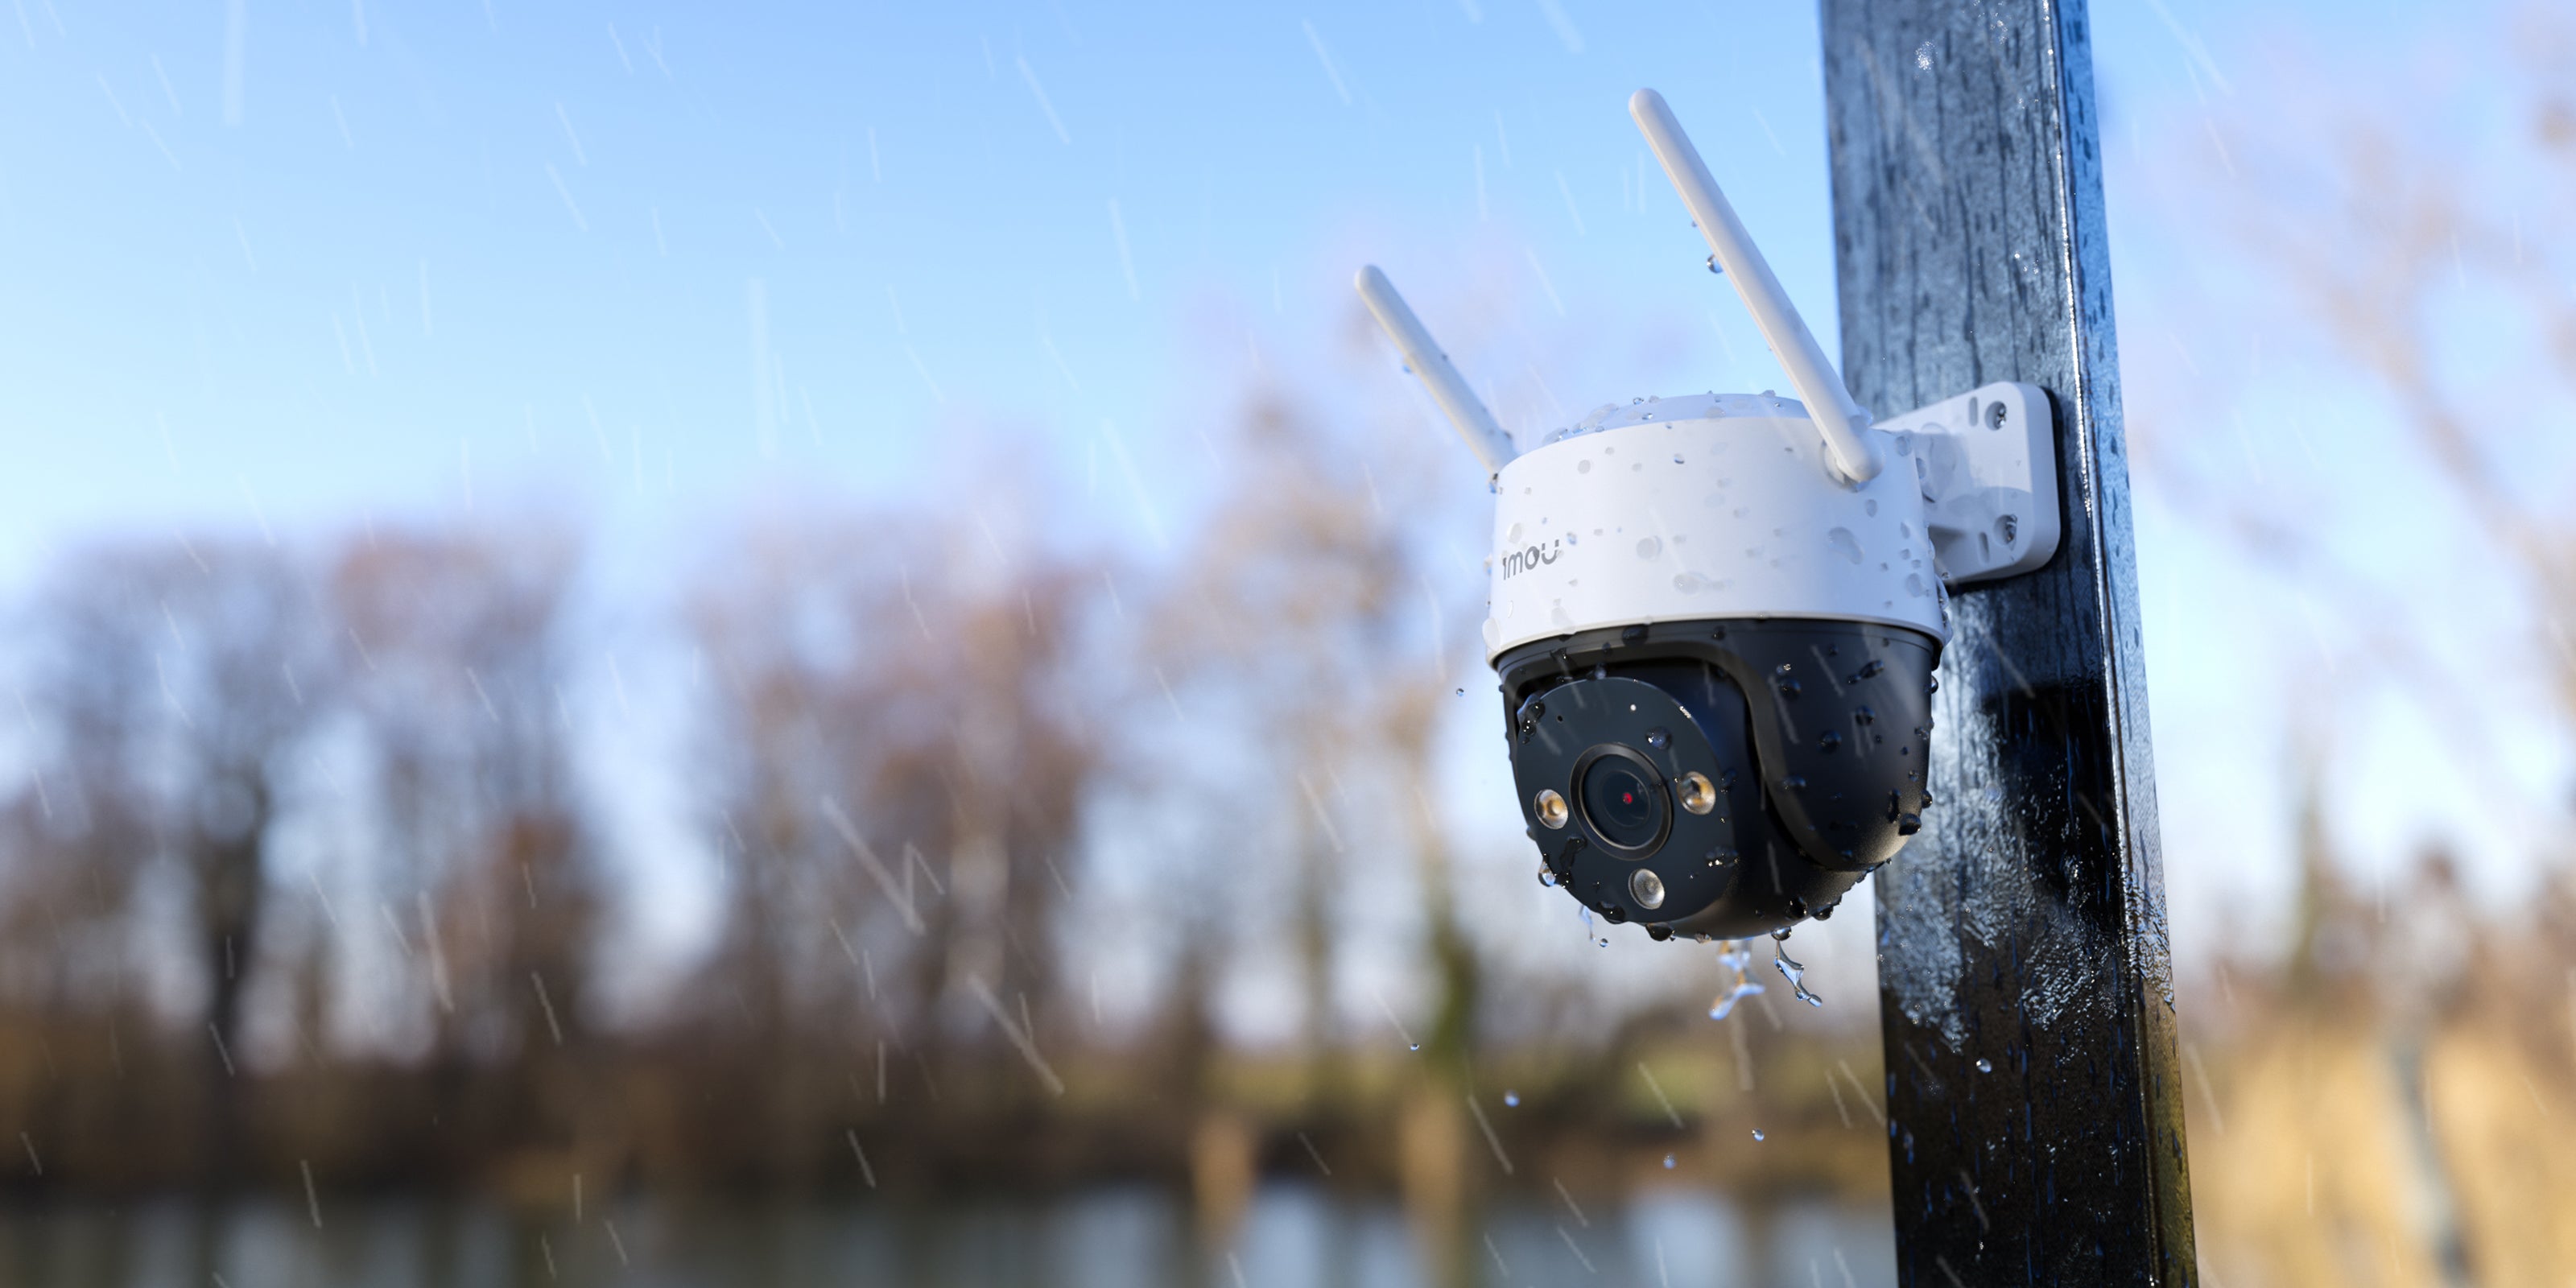 IMOU-Caméra de surveillance extérieure IP WiFi Cruiser 2 PTZ, étanche IP66,  avec vision nocturne, détection humaine, connexion Wi-Fi et RJ45